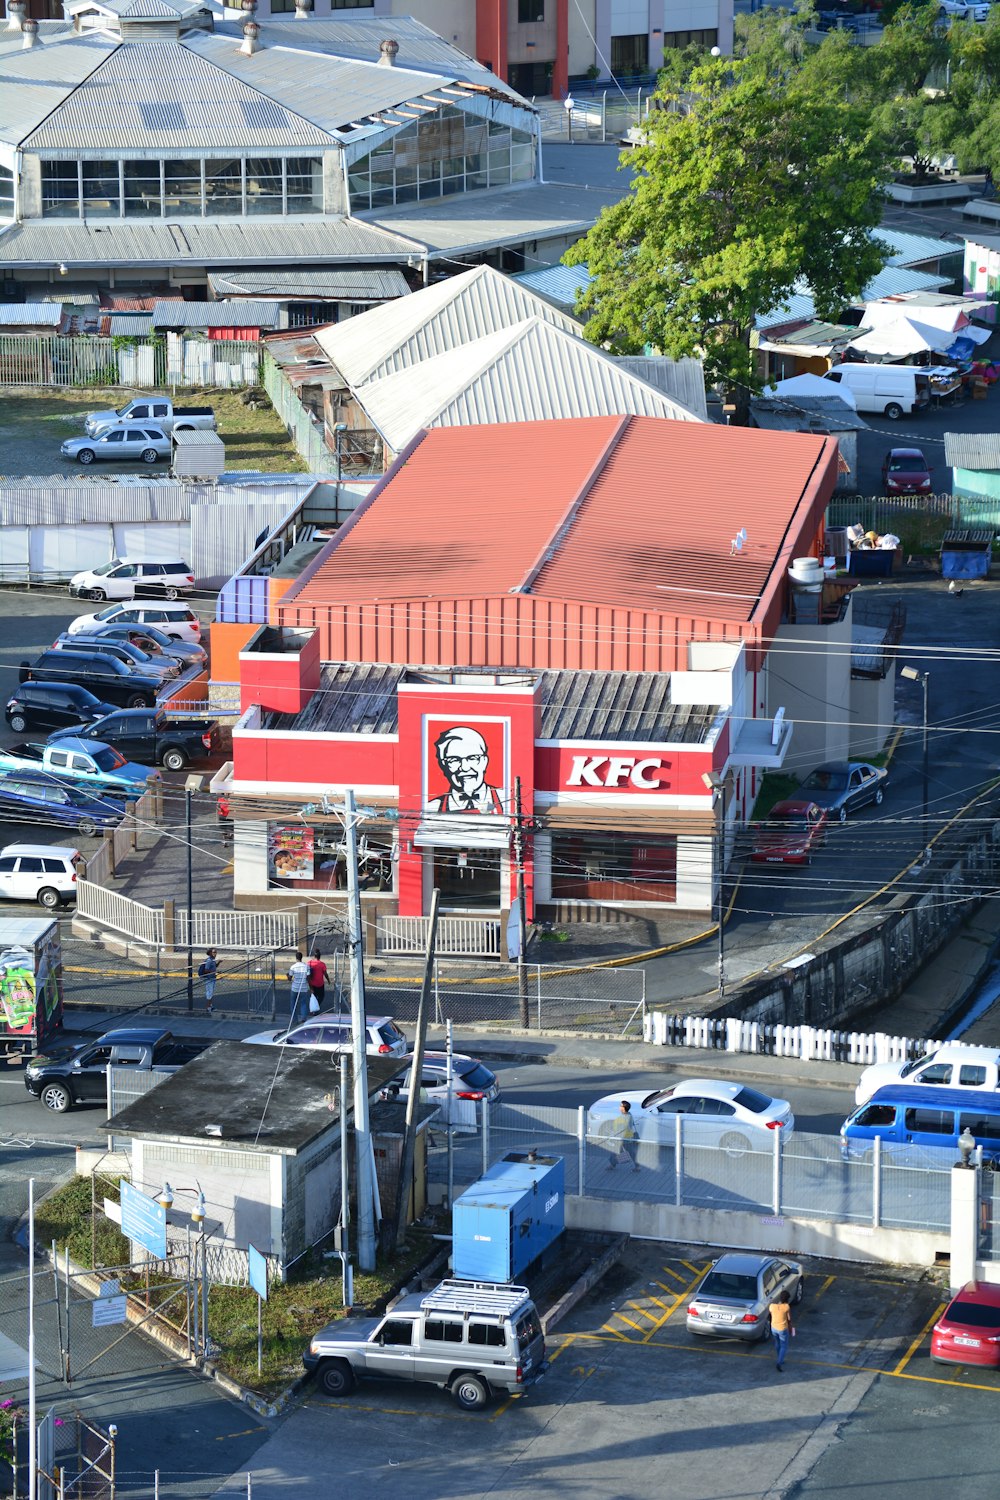 Edificio KFC junto a vehículos estacionados en el estacionamiento durante el día